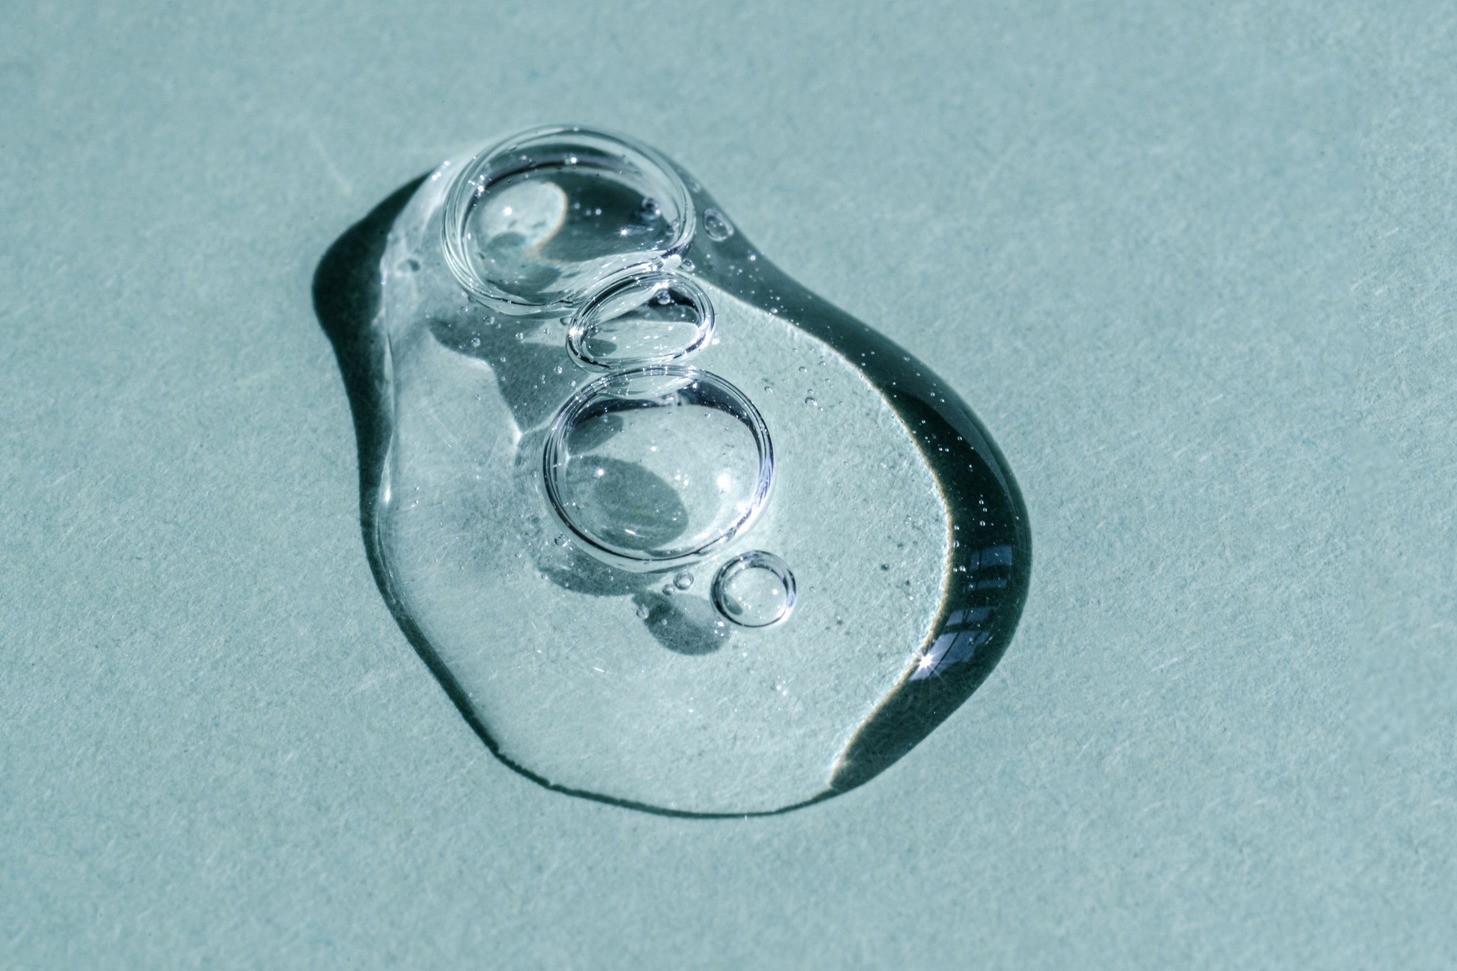 gota de jarabe de azúcar invertido sobre una superficie plana de color azul celeste